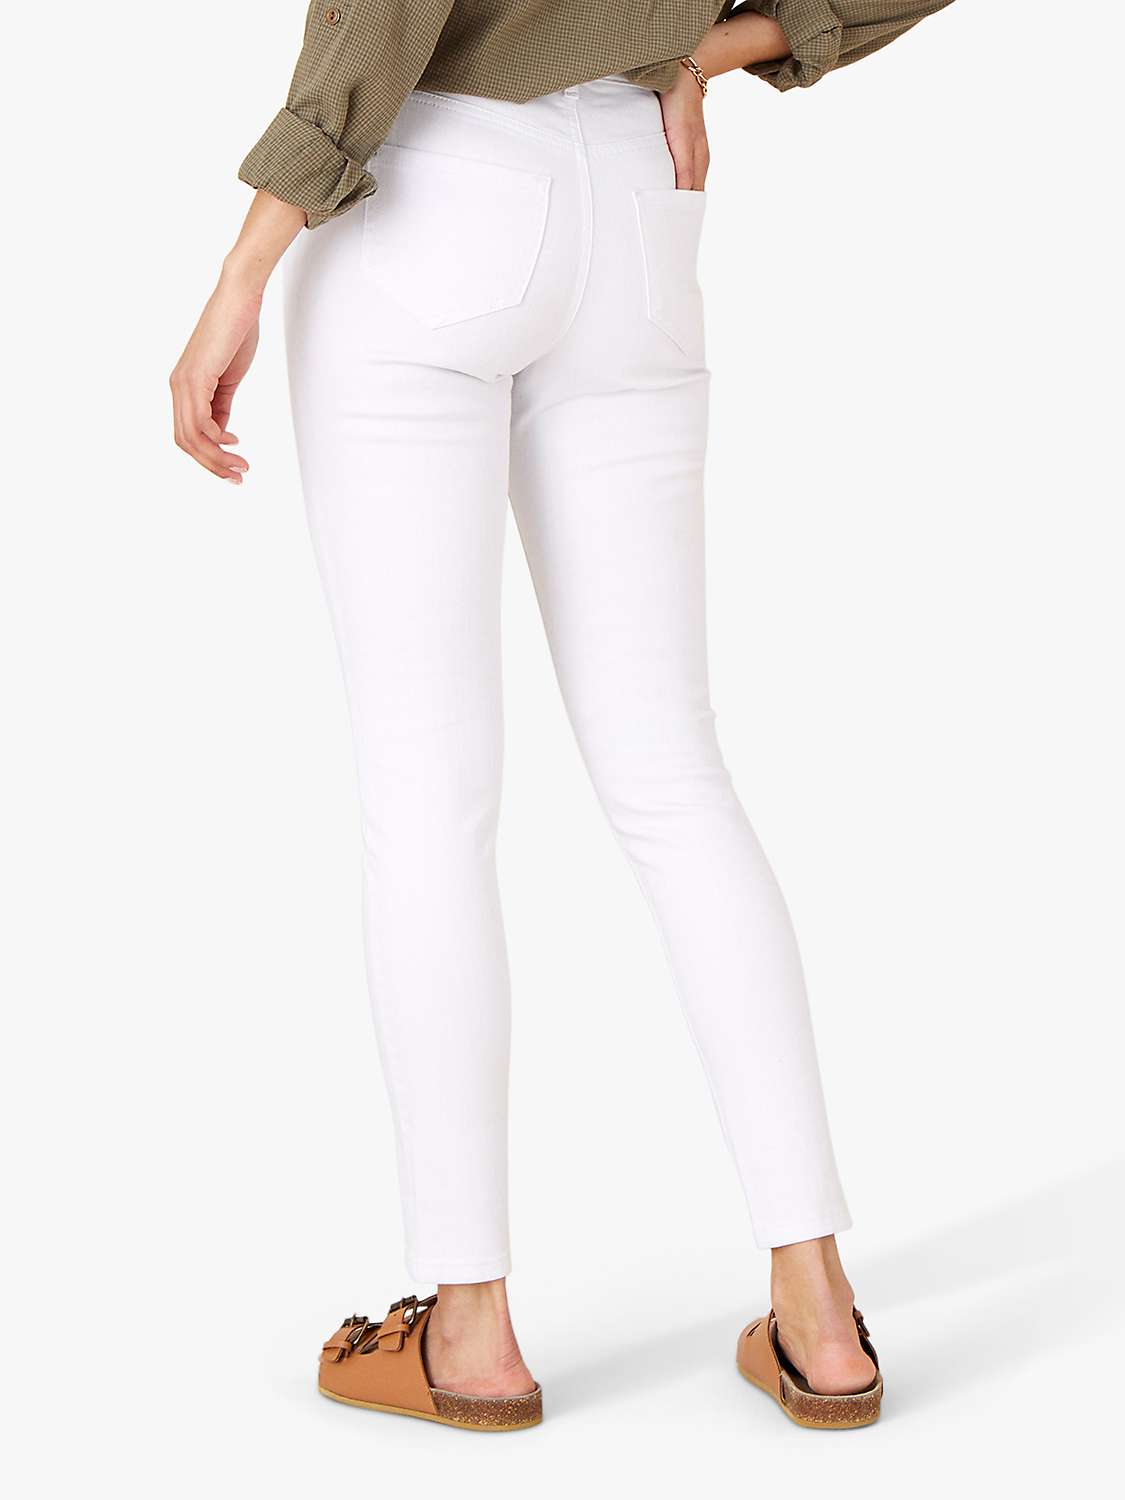 Buy Monsoon Iris Regular Length Skinny Jeans, White Online at johnlewis.com